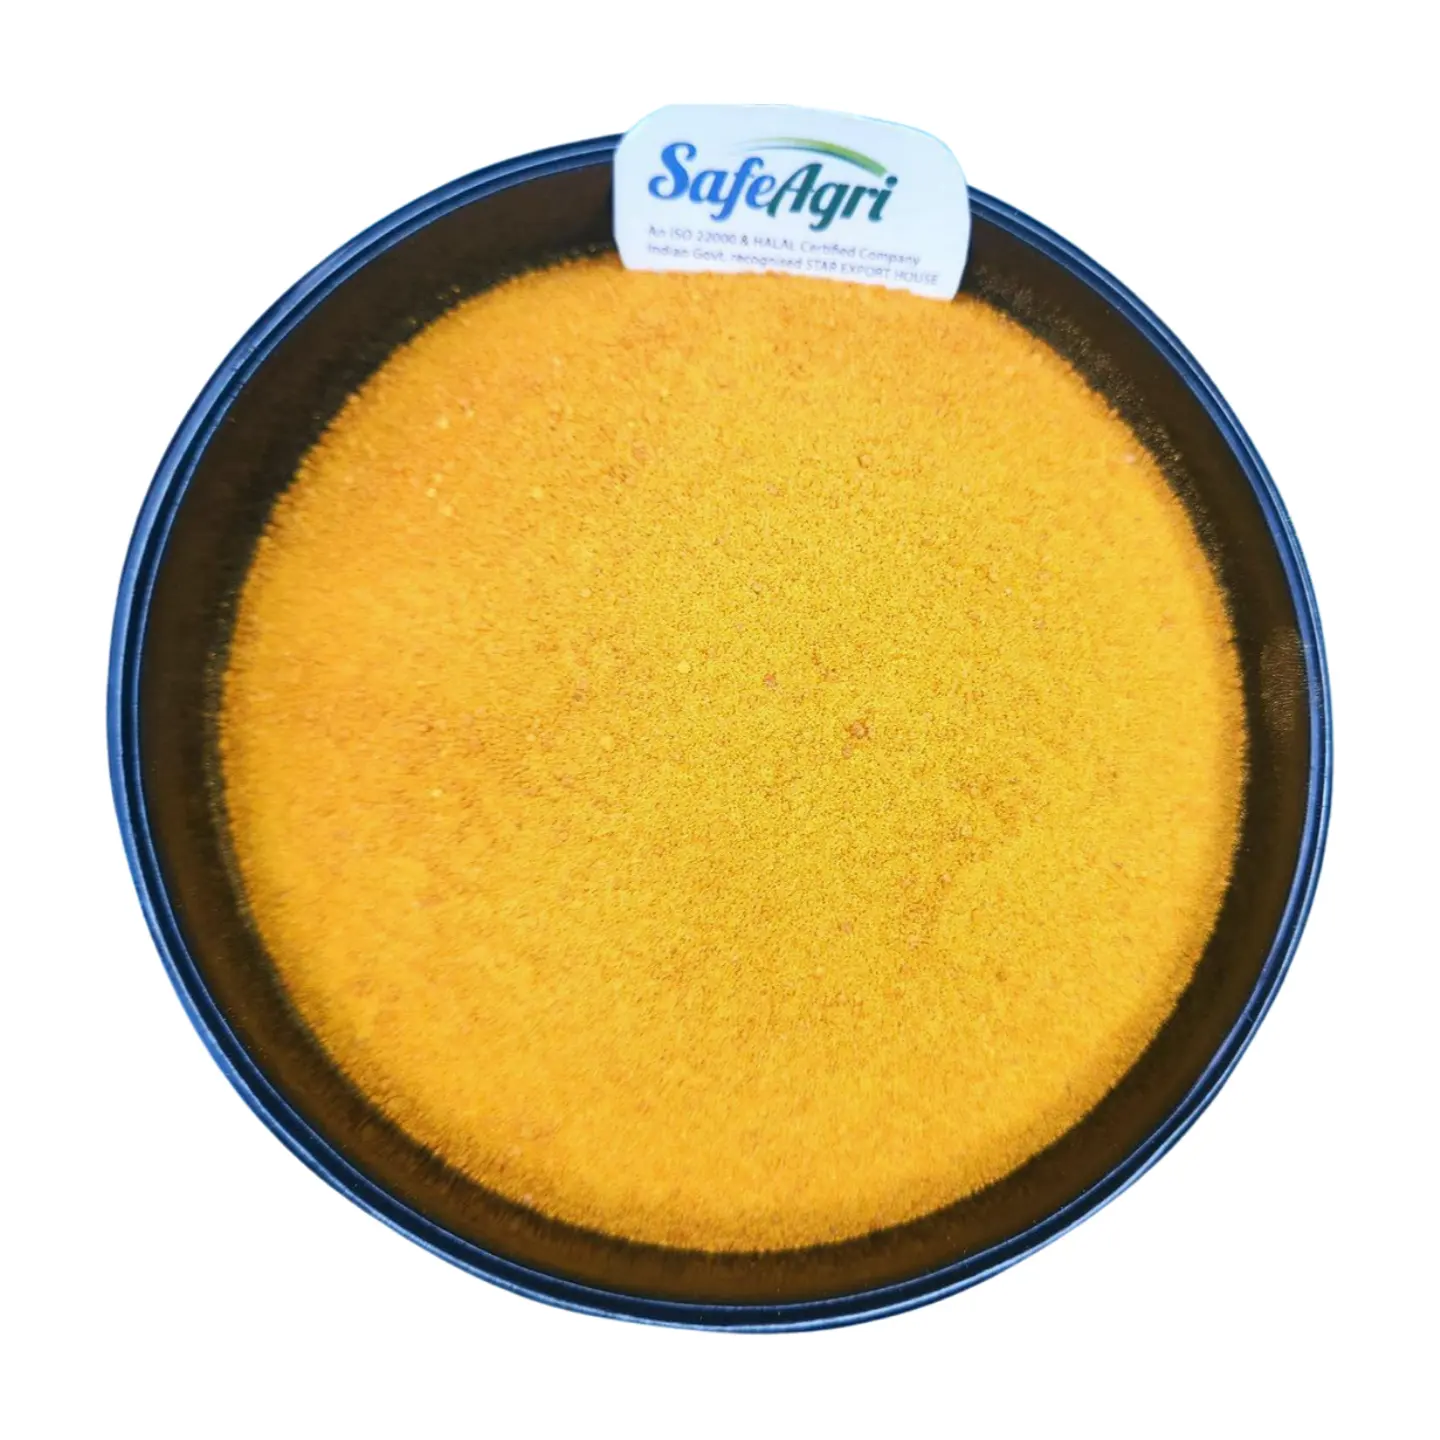 Safeagri 동물 및 생선 공급 업체를 위해 인도에서 가장 잘 팔리는 옥수수 글루텐 옐로우 컬러 동물 사료 프리미엄 등급